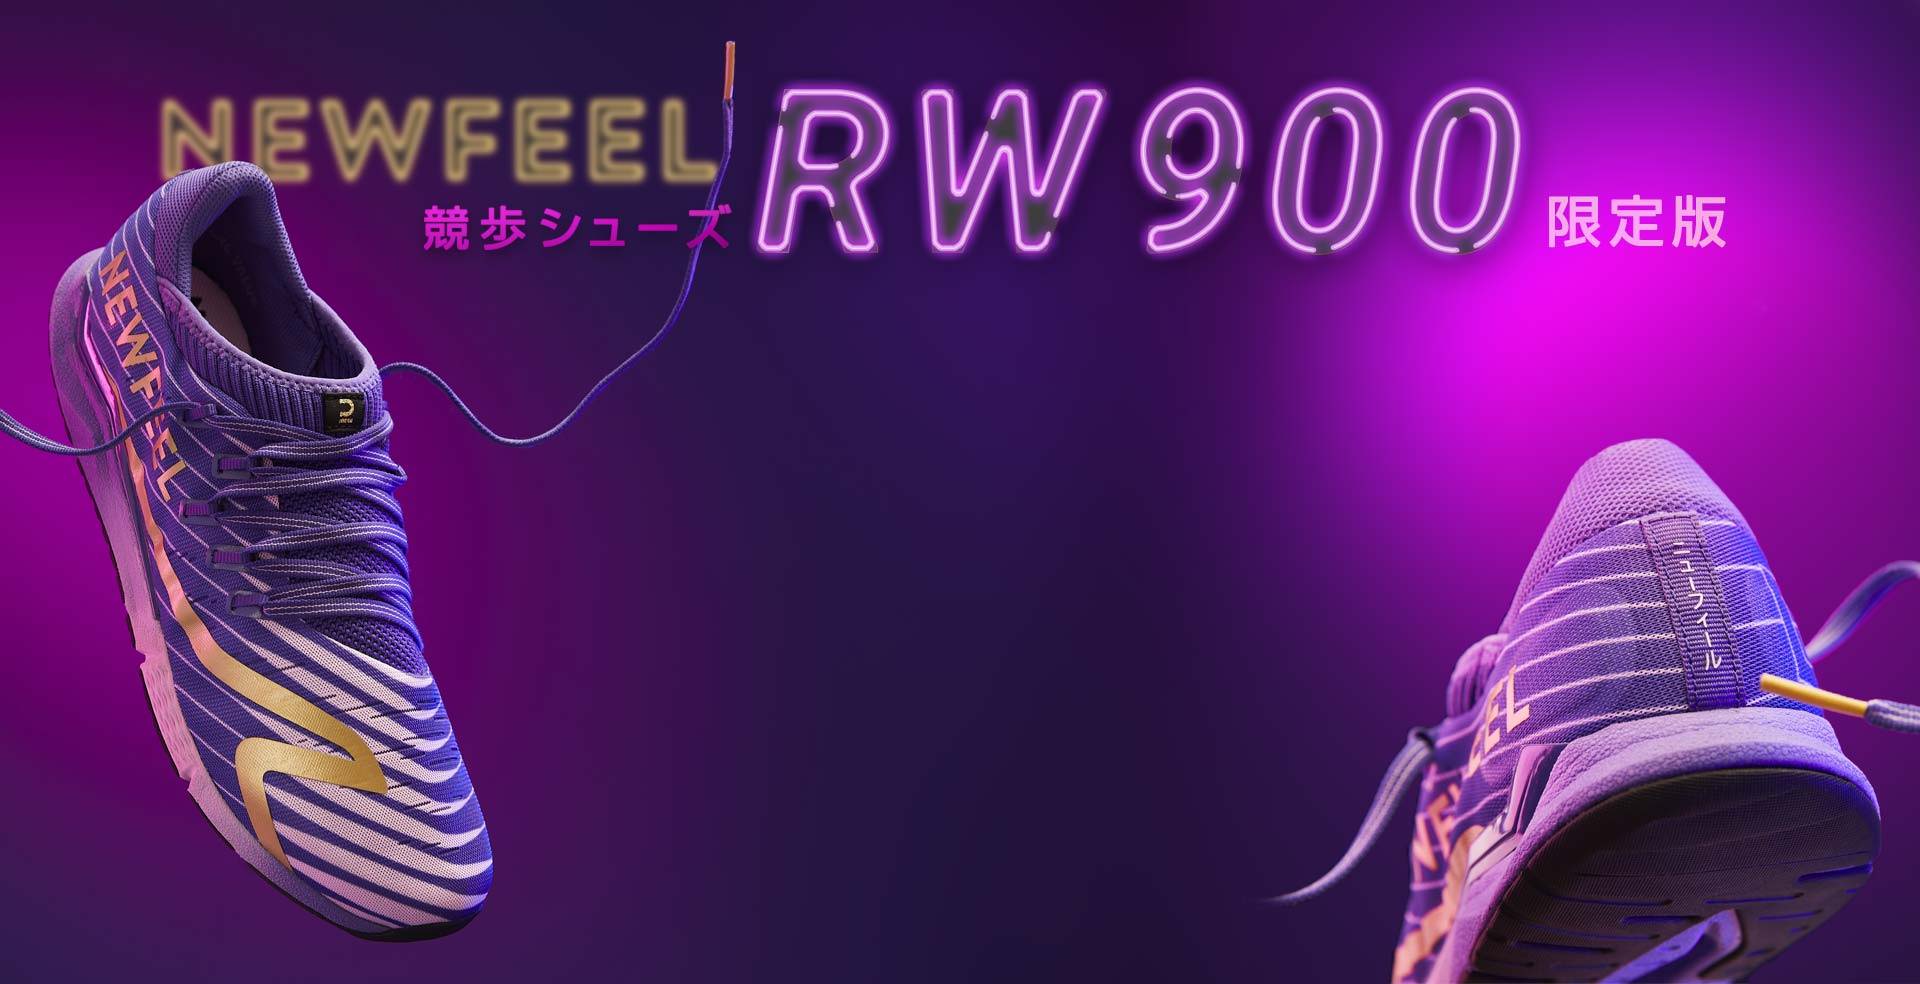 NEWFEEL (ニューフィール)競歩シューズ RW900 限定版 Limited edition